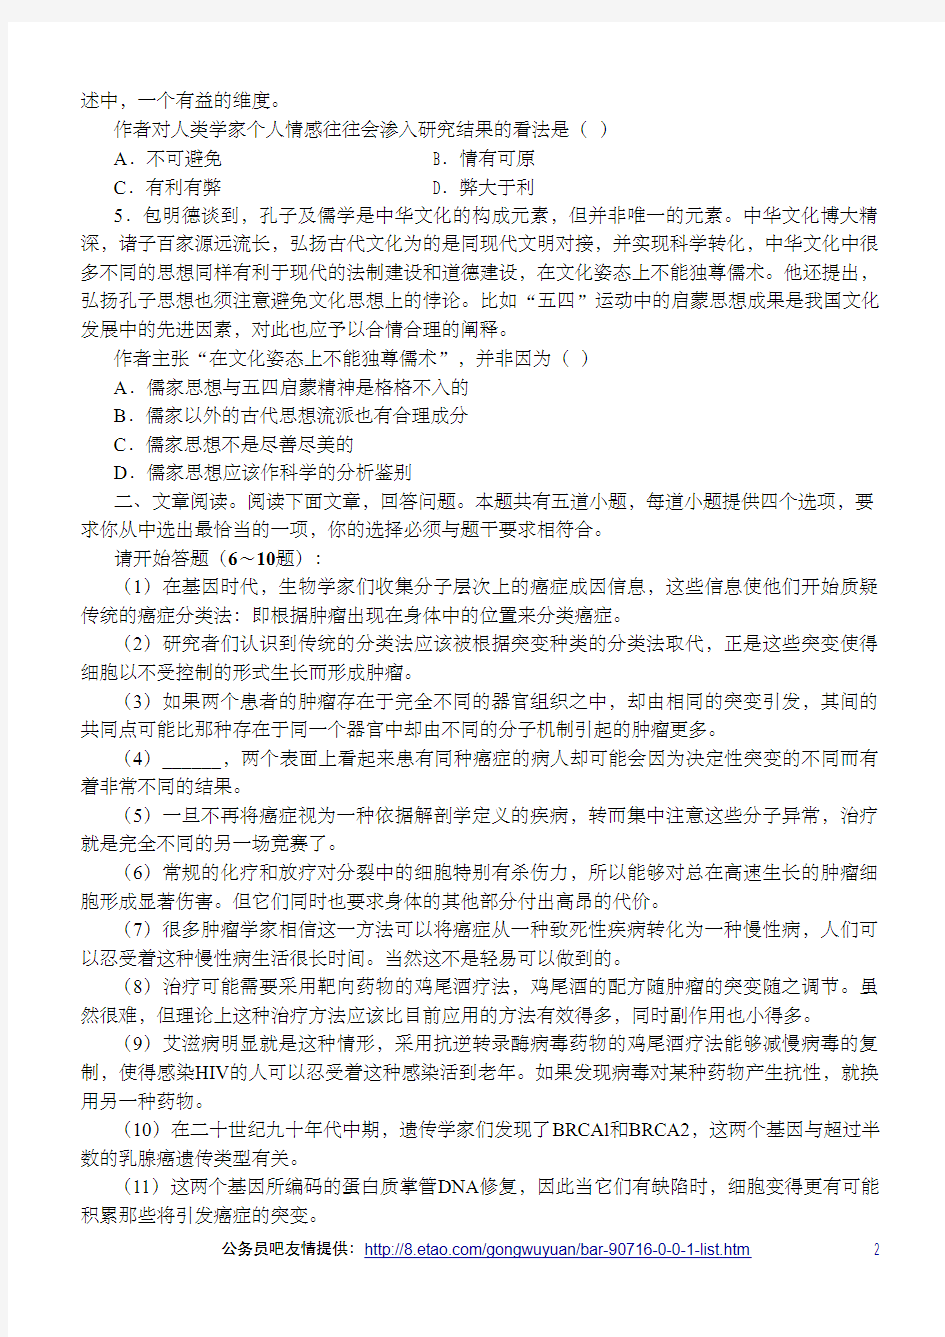 2011年江苏省公务员录用考试《行政职业能力测验》A类真题及答案解析